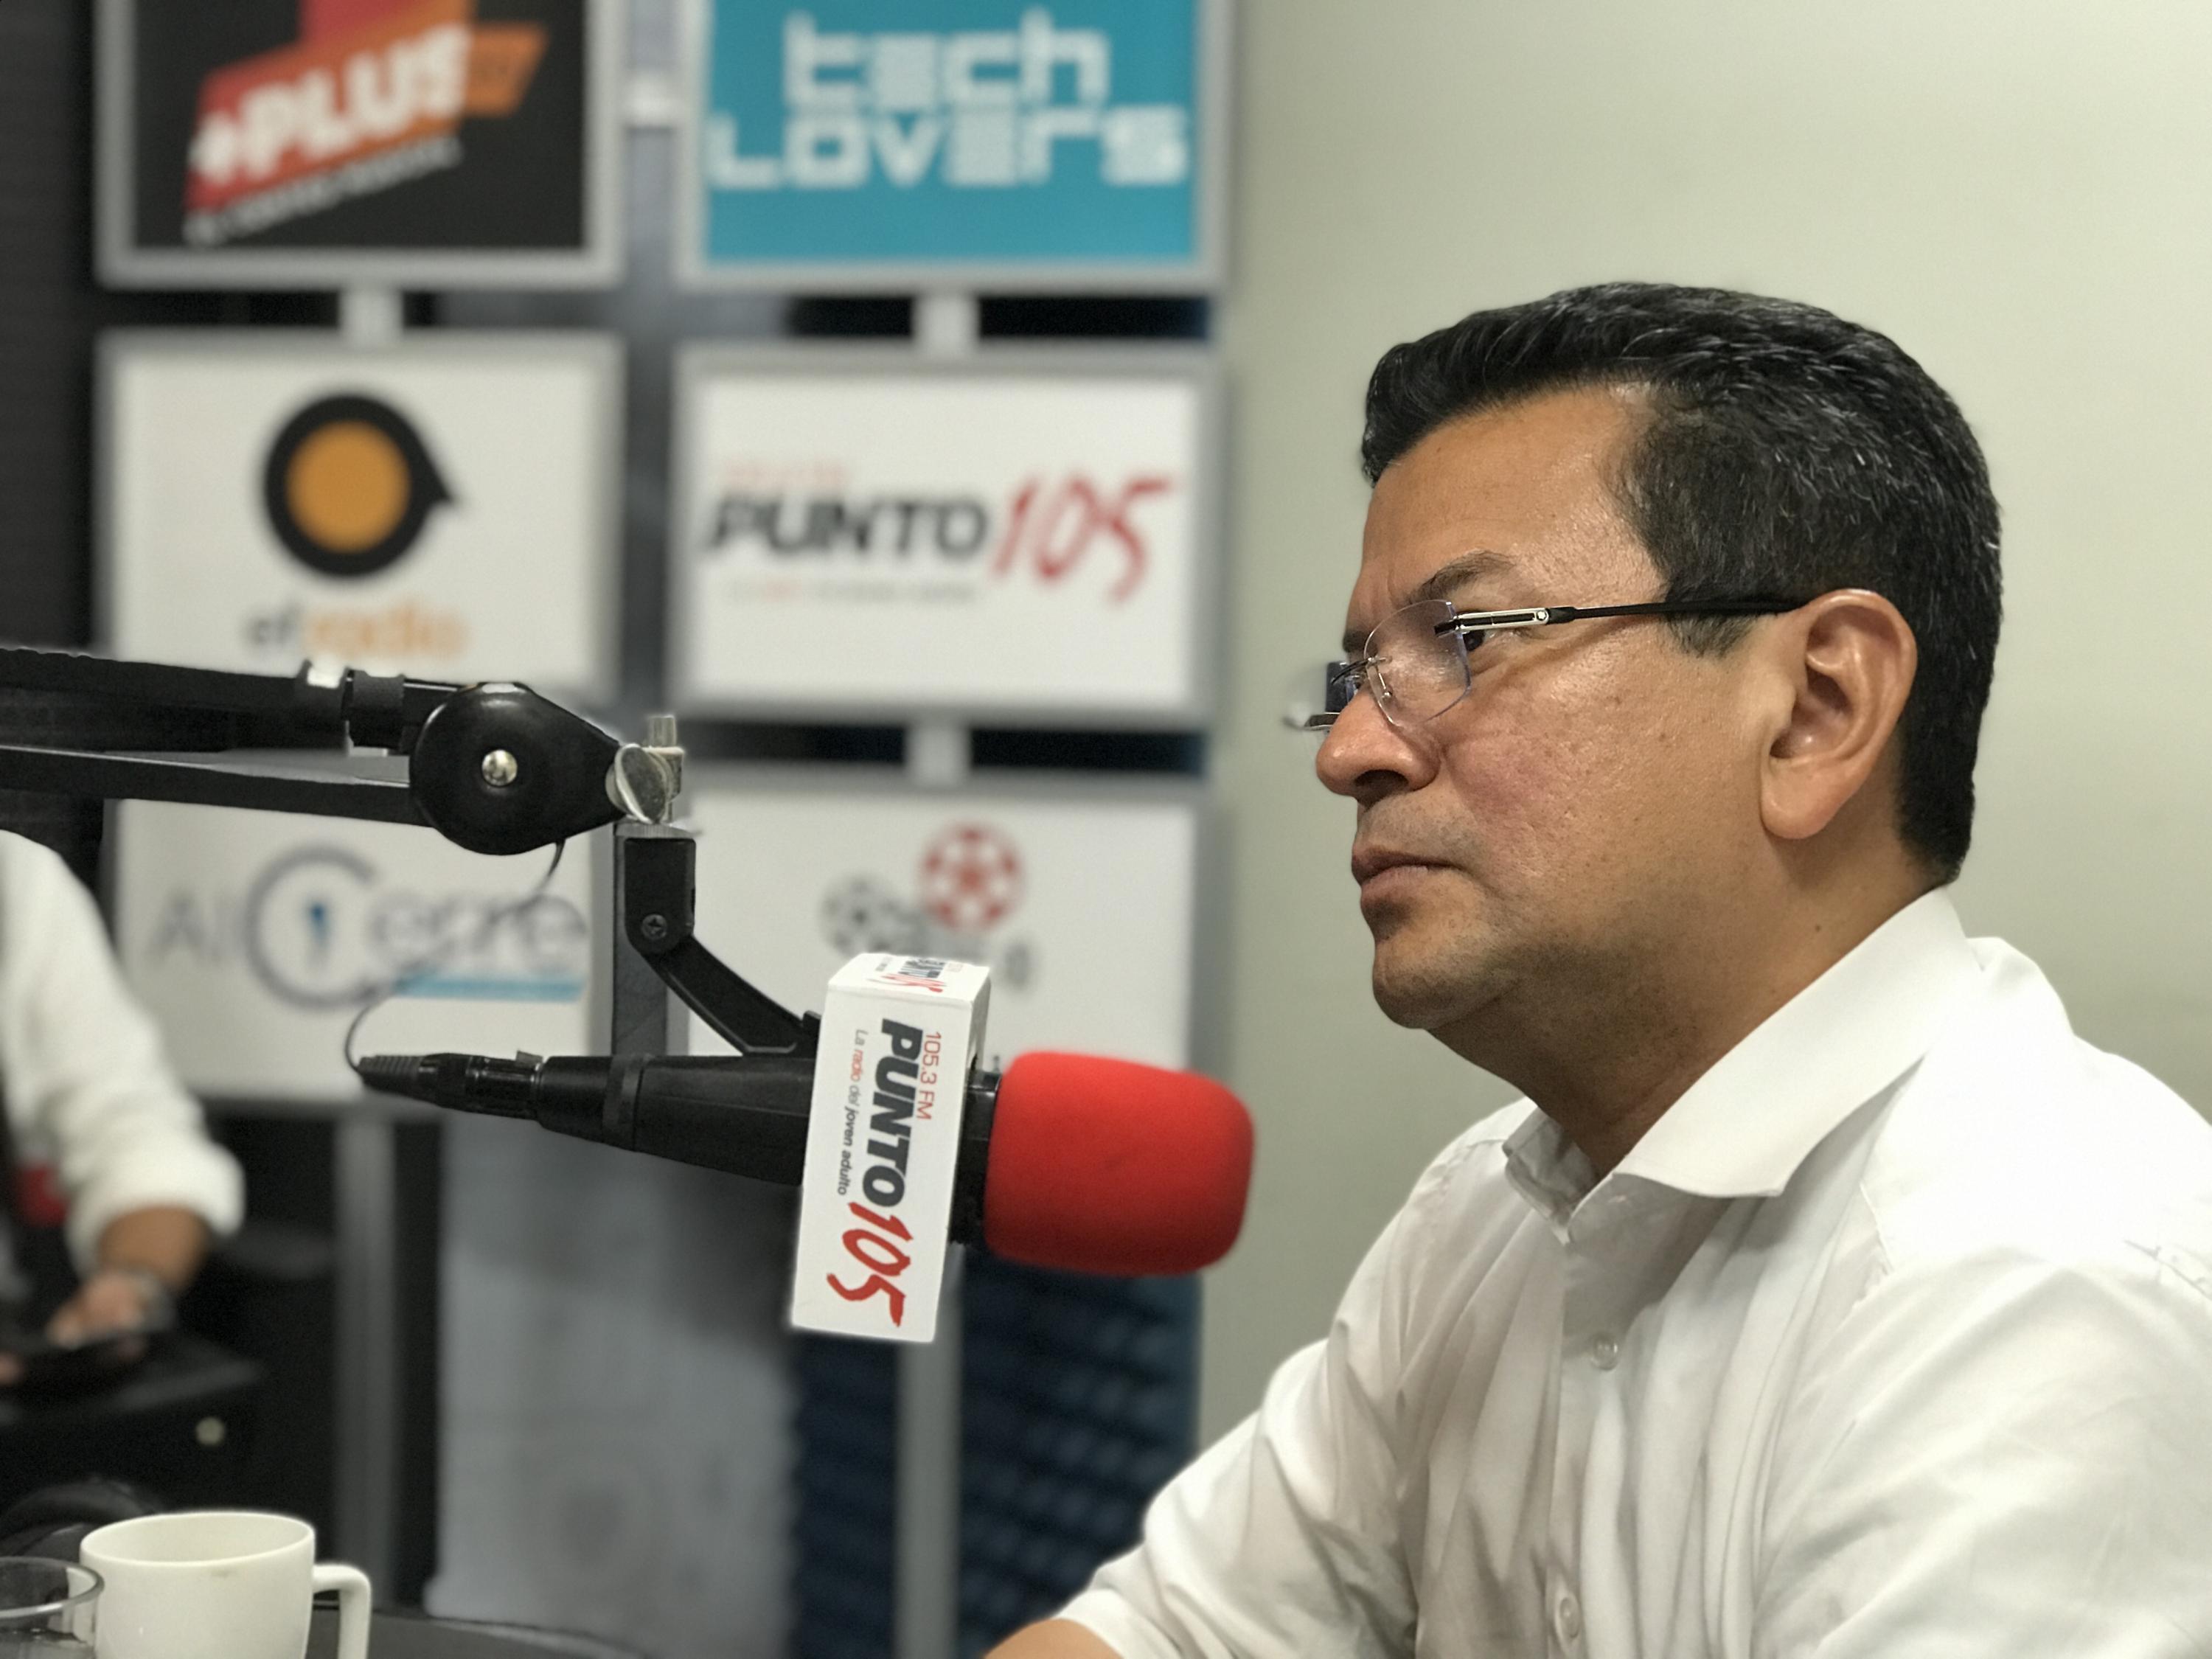 Hugo Martínez, candidato presidencial del FMLN, durante la entrevista en El Faro Radio, el 29 de noviembre de 2018. Martínez dijo que no hay posibilidad de diálogo con pandillas en su plataforma de gobierno. Foto: Omnionn/ El Faro